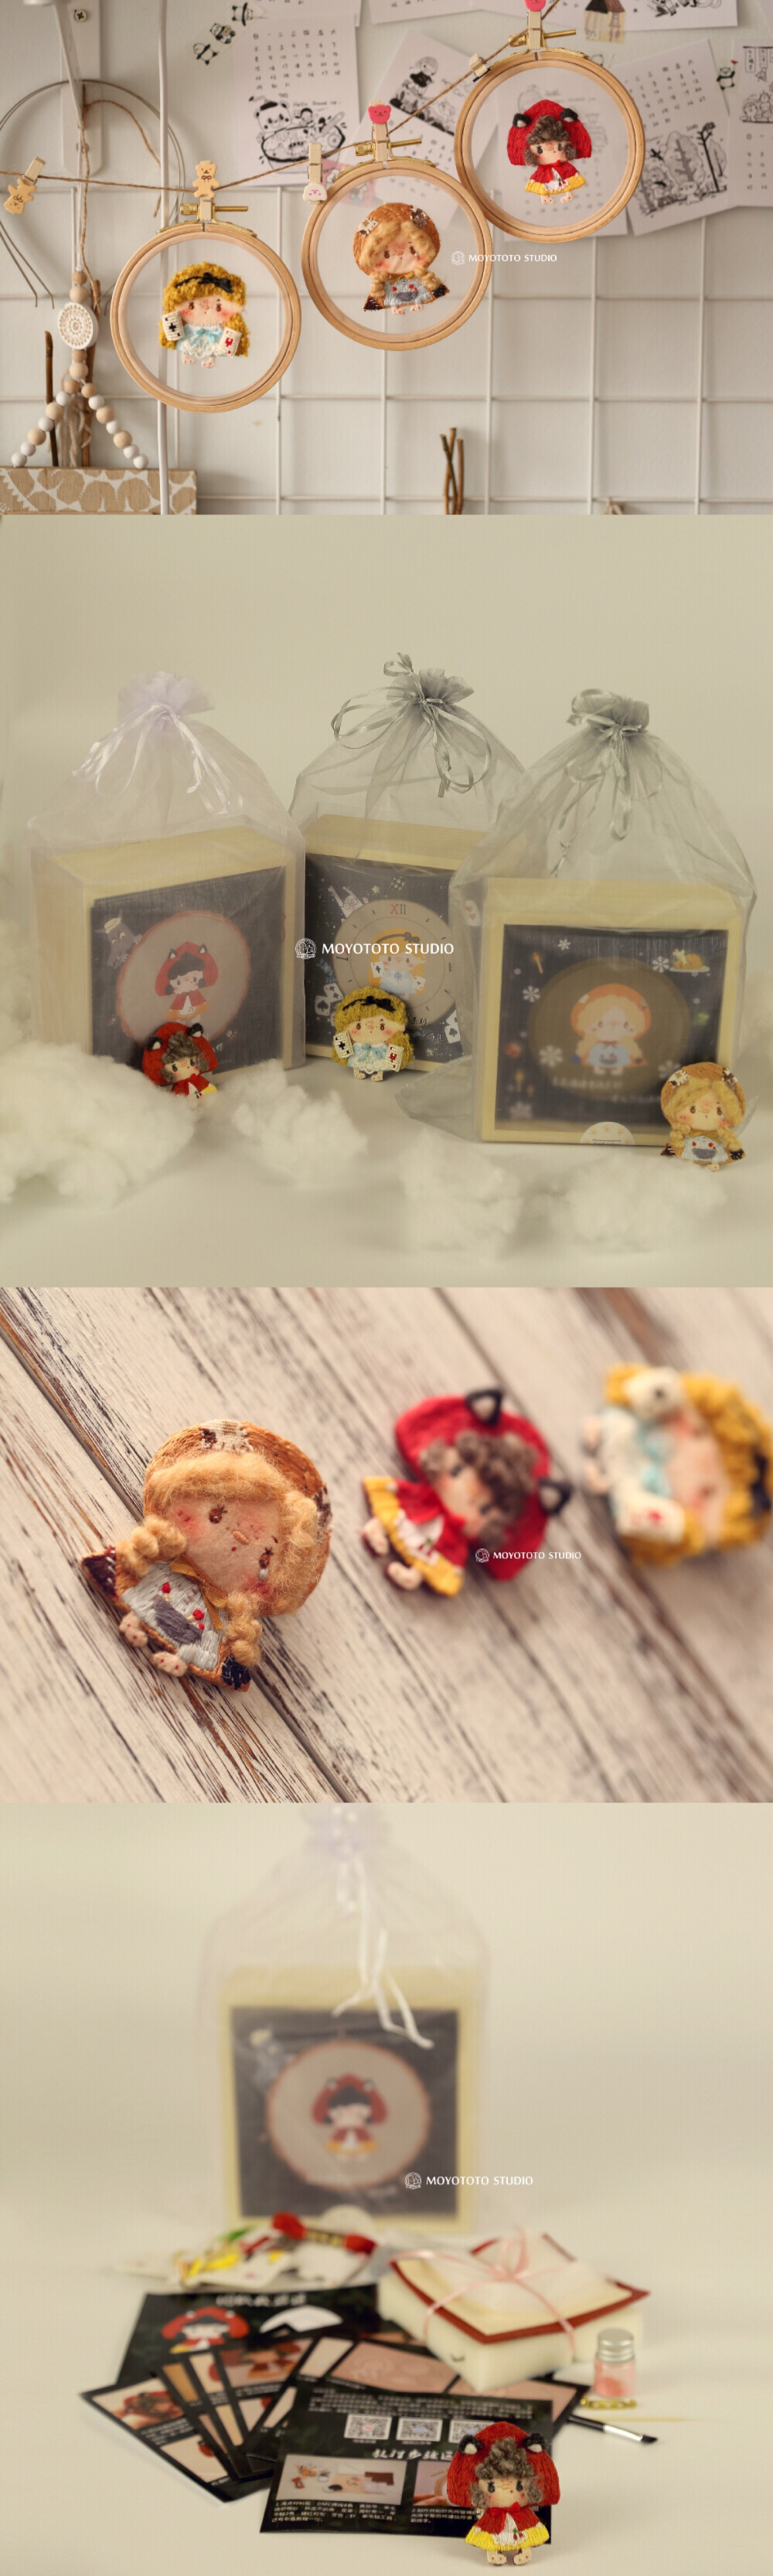 芝麻娃娃童话系列刺绣 材料包 （淘宝搜 MOYO TOTO手作工作室 材料包有售）刺绣 童话